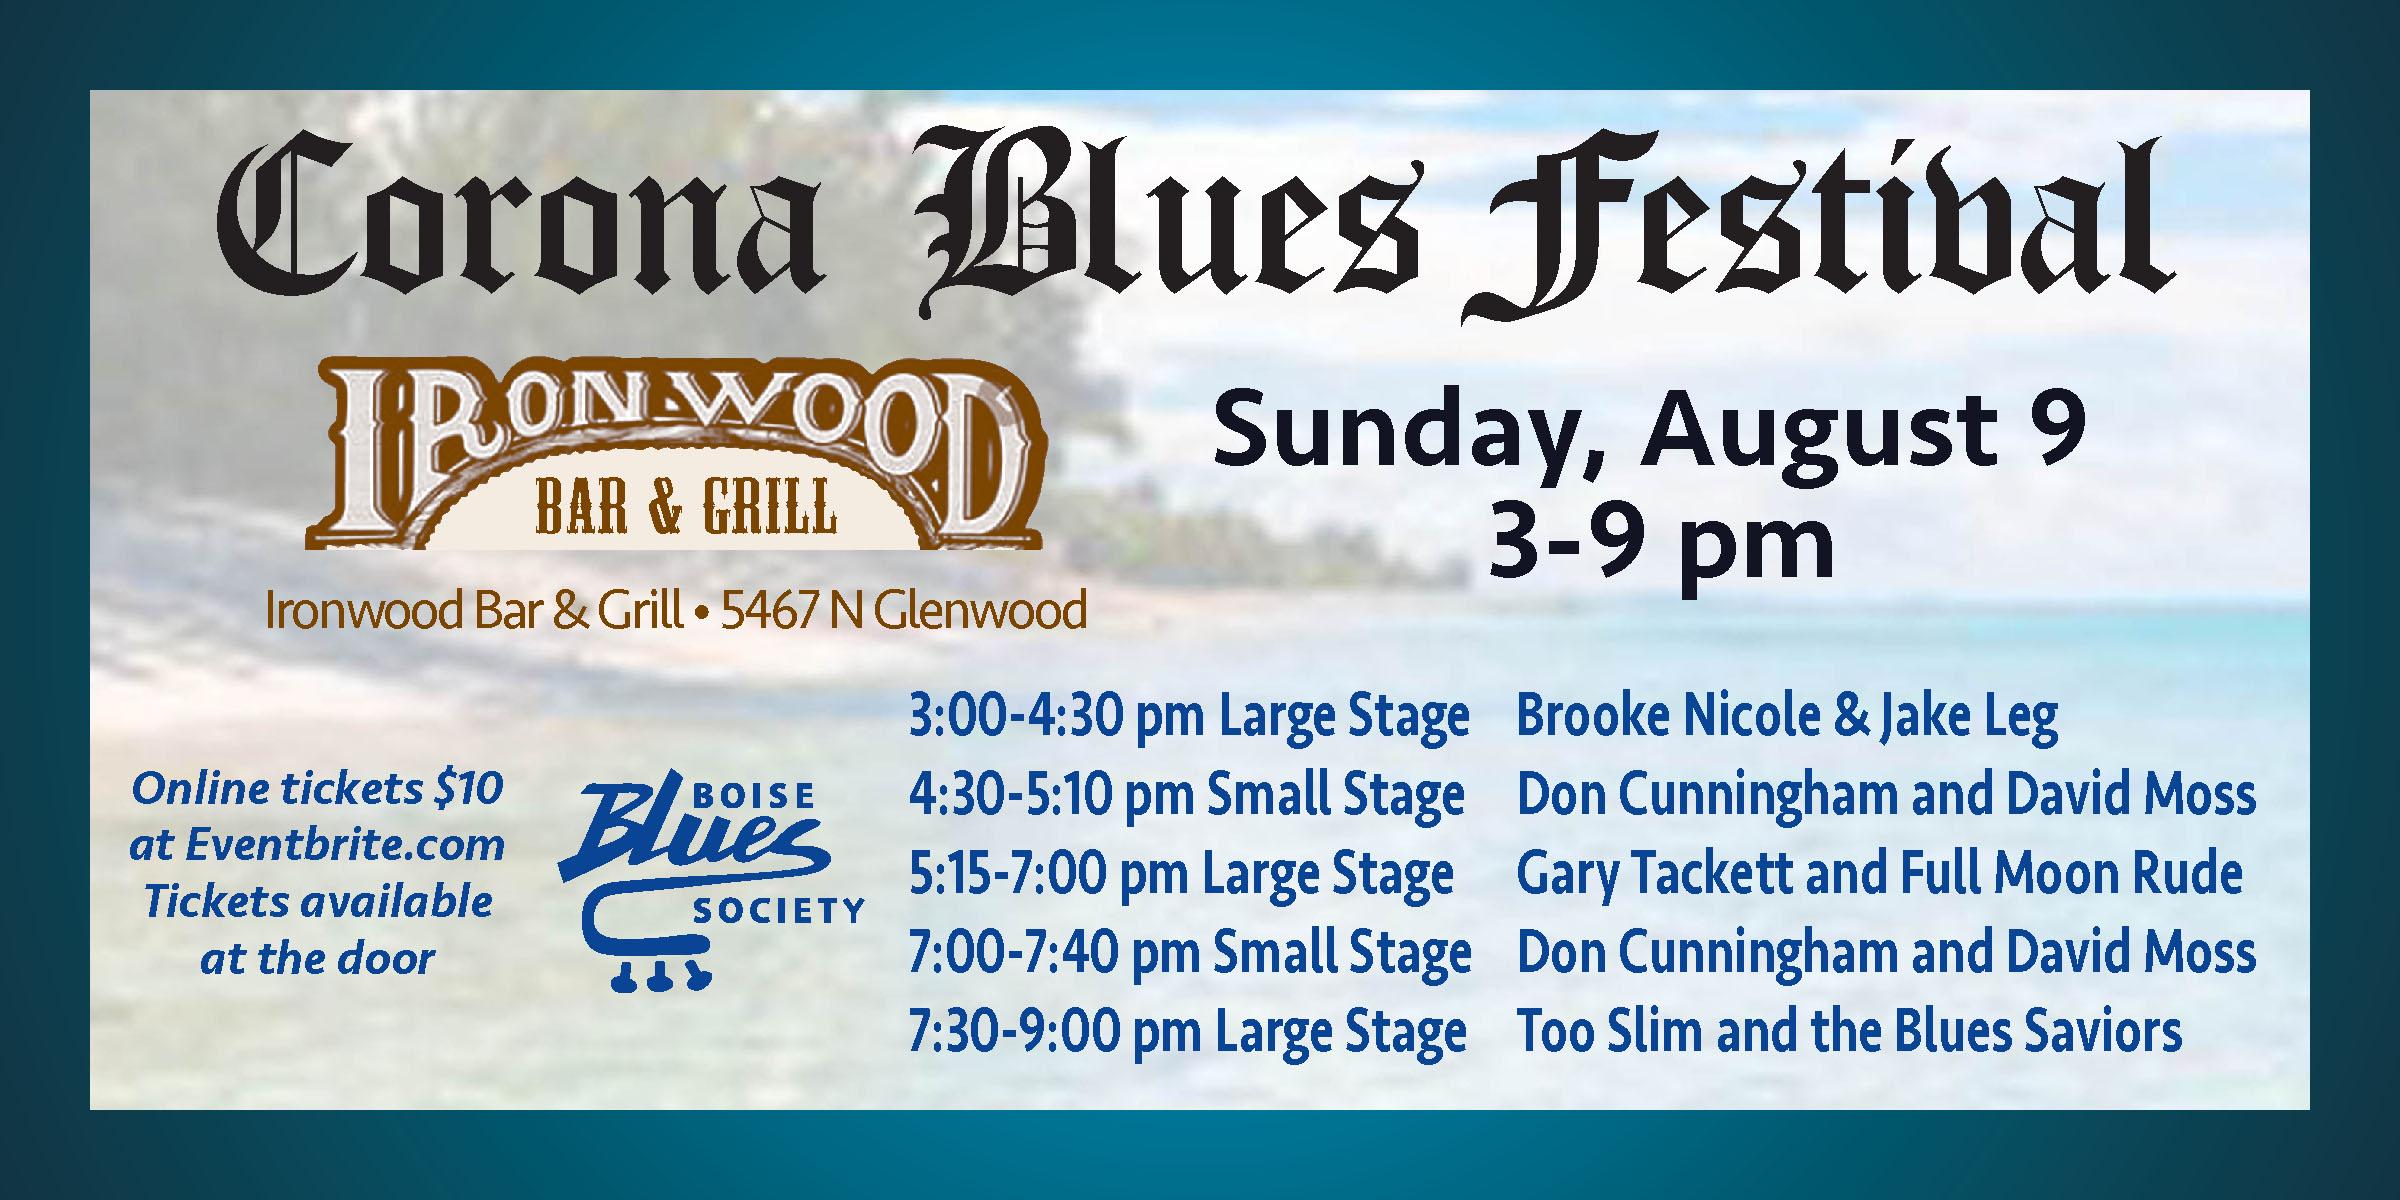 Boise Blues Society presents Corona Blues Festival